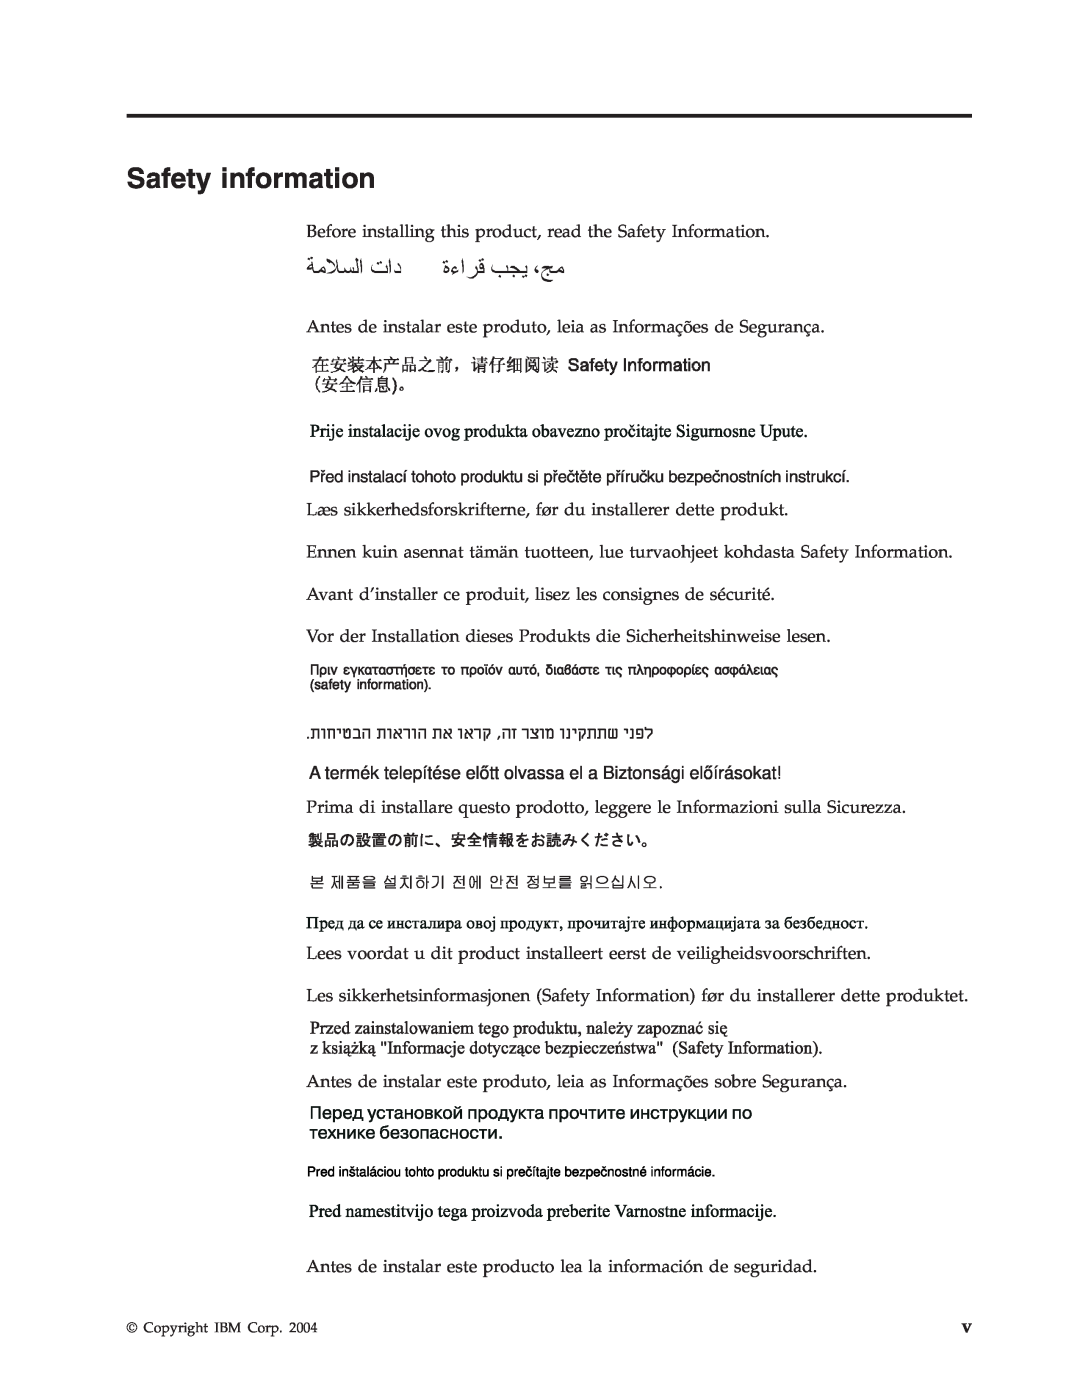 IBM Partner Pavilion PROJECTOR E400 manual Safety information 